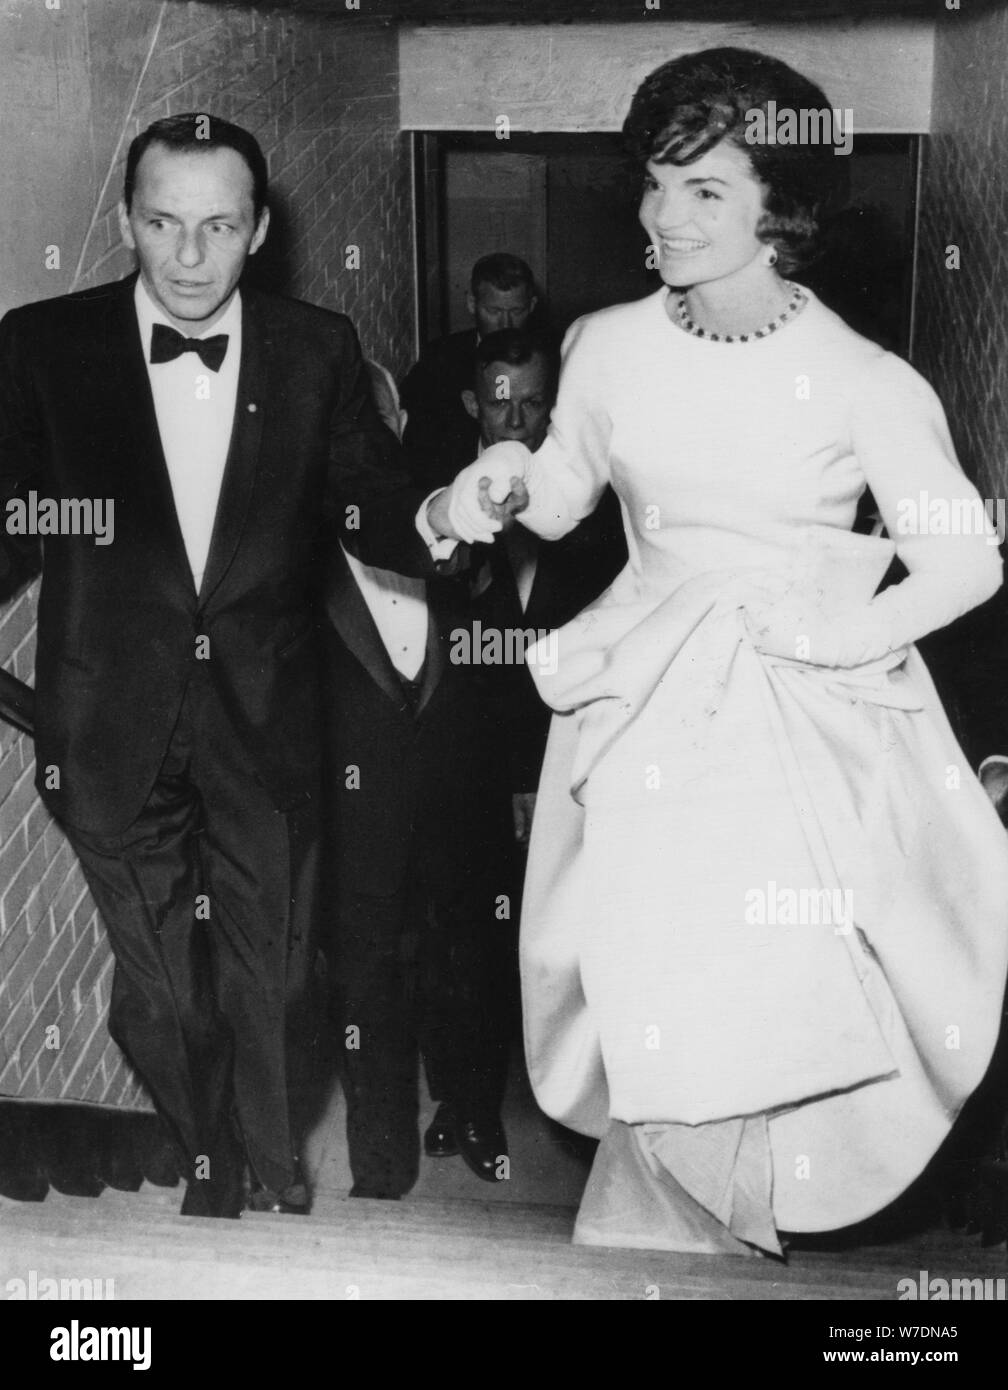 Jacqueline Kennedy avec Frank Sinatra au Président Kennedy's pre-gala d'inauguration, 1961. Artiste : Inconnu Banque D'Images